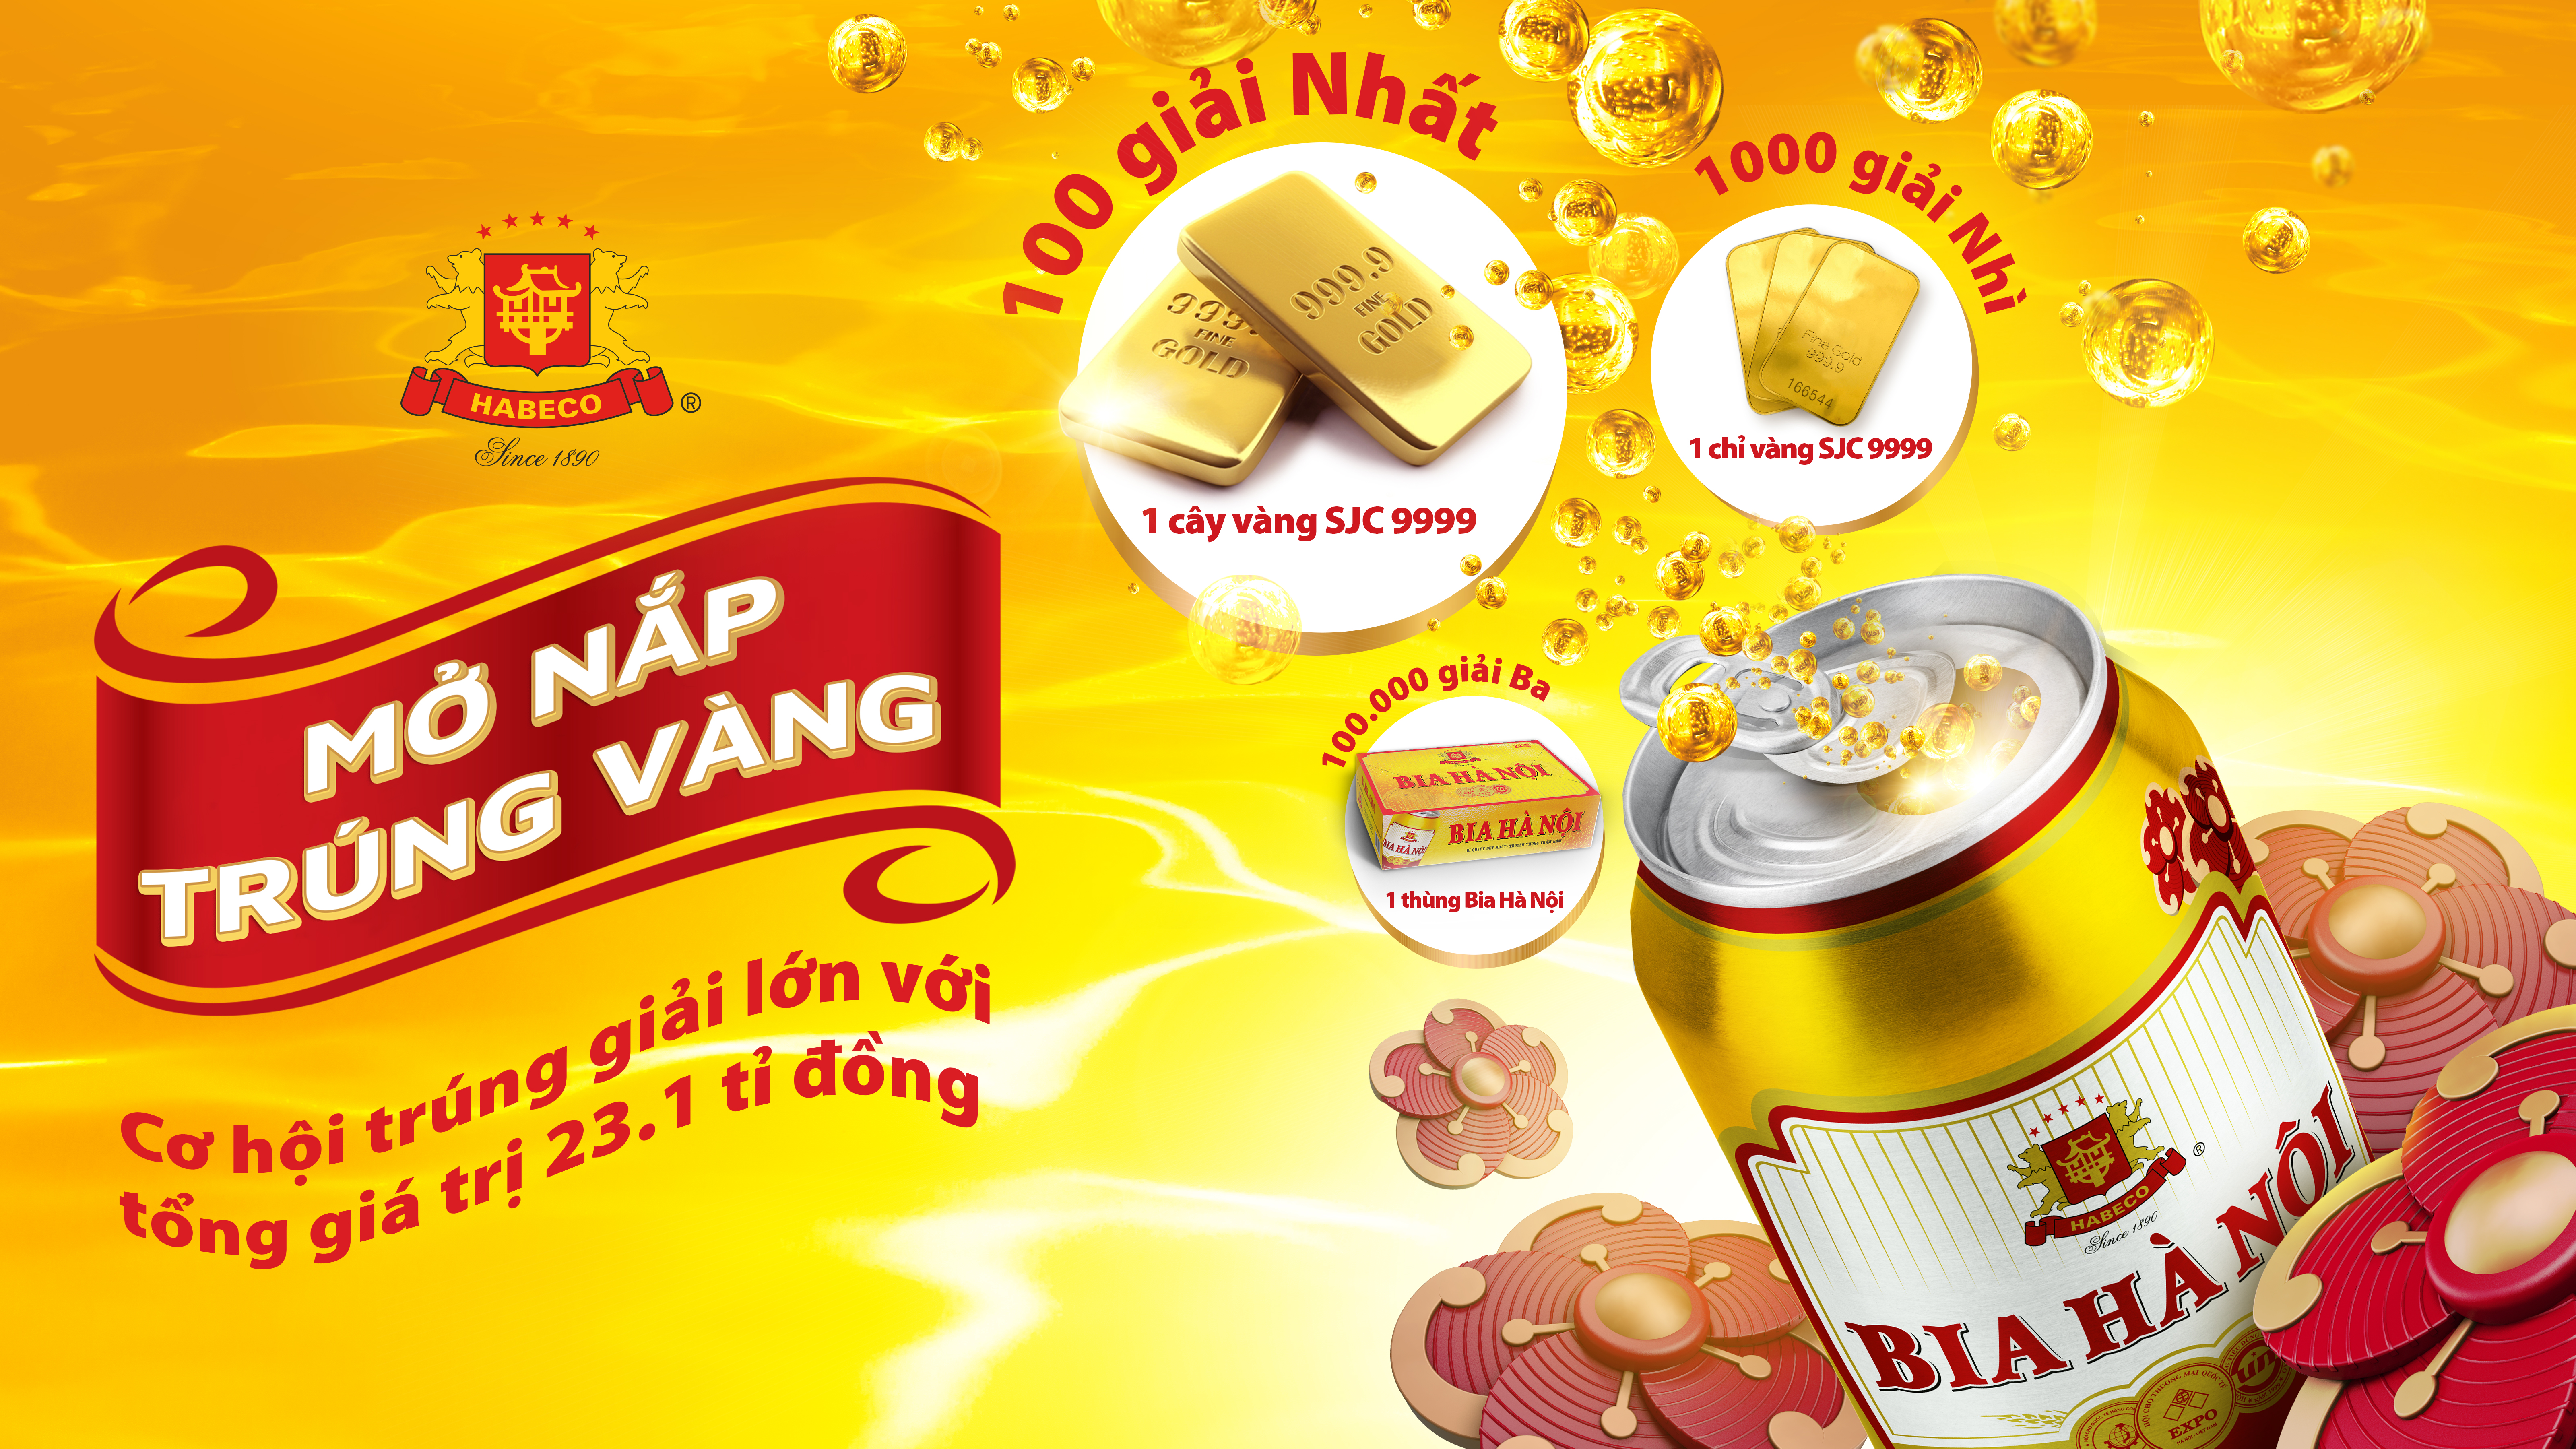 Công bố chương trình khuyến mại Bia Hà Nội Tết 2019 “Mở nắp trúng vàng”